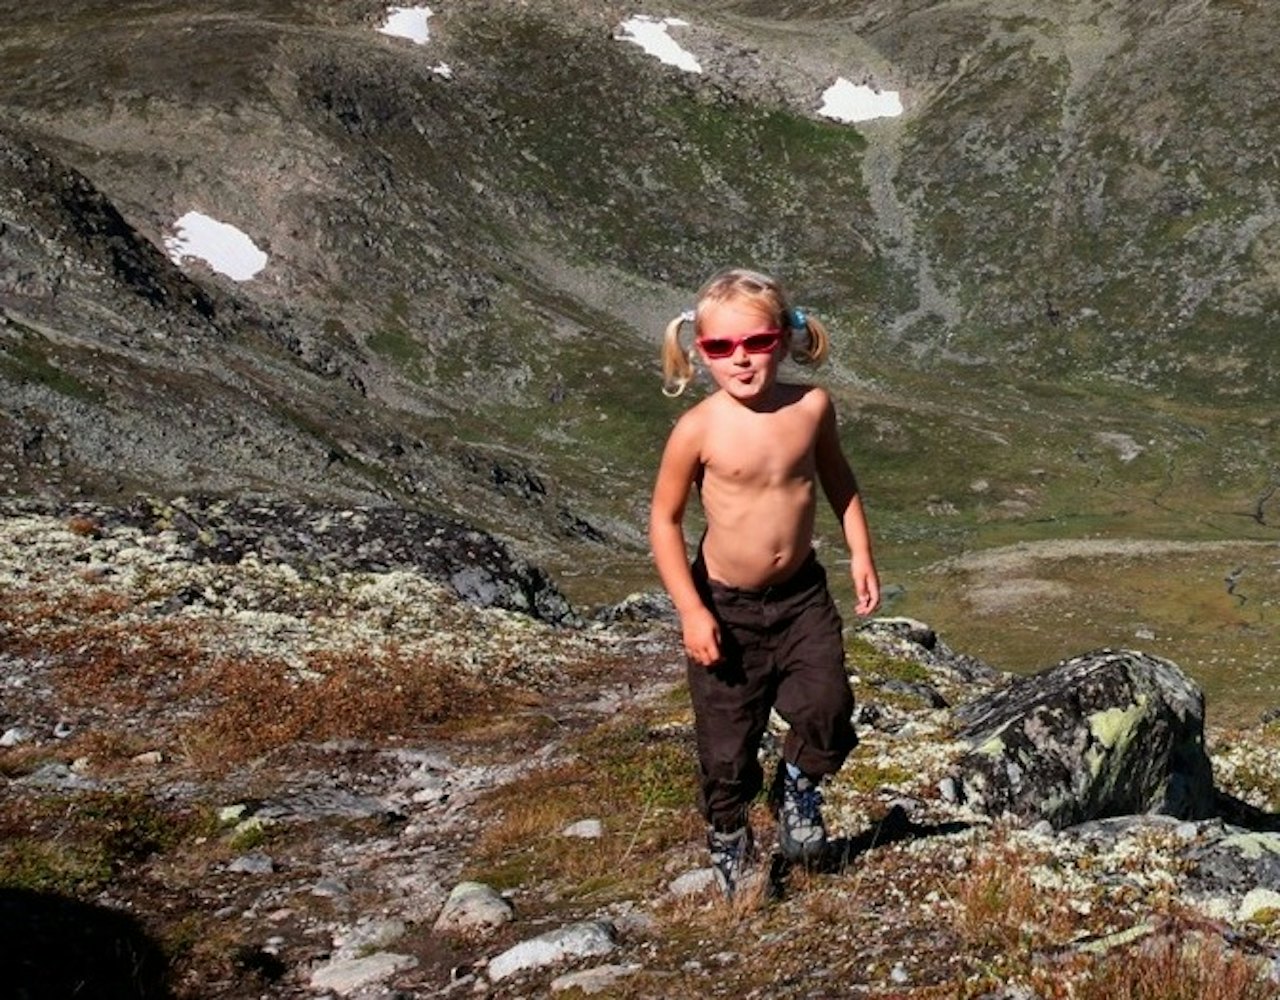 Gjendine Eidslott (4) på vei fra Memurubu mot Besseggen, med fjellet Surtningssui bak.